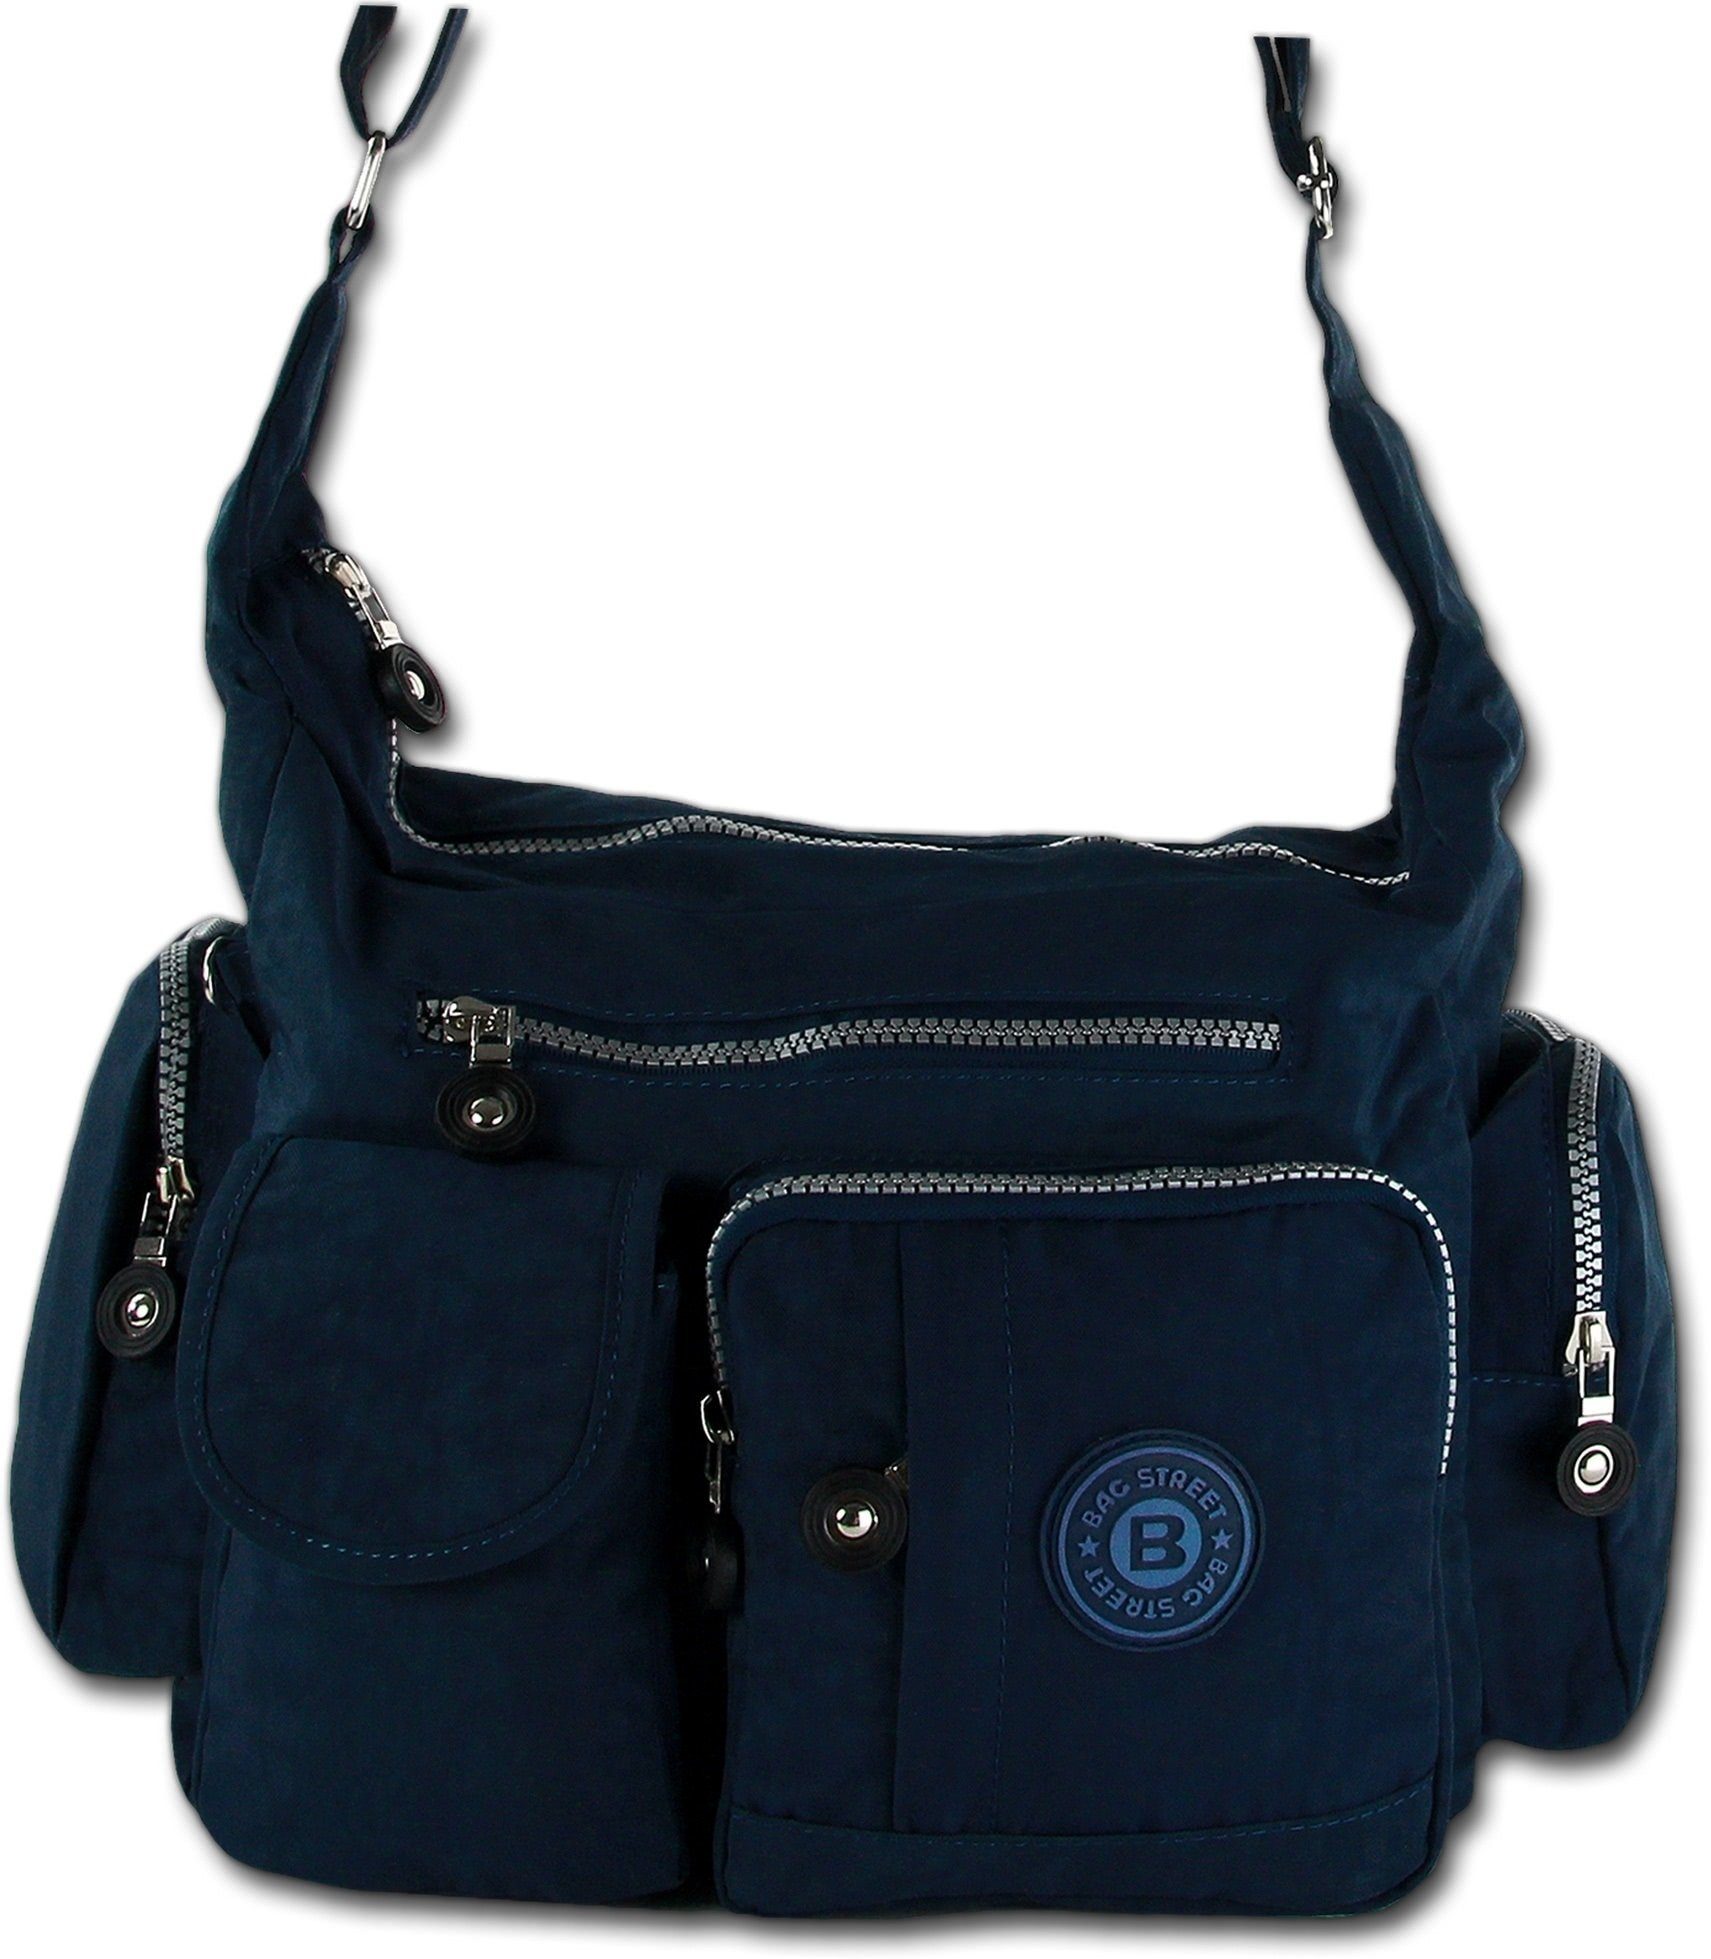 Bag STREET Damen, Schultertasche (Schultertasche, Tasche Nylon strapazierfähiges Street Schultertasche), Jugend Damenhandtasche blau BAG Textilnylon Tasche